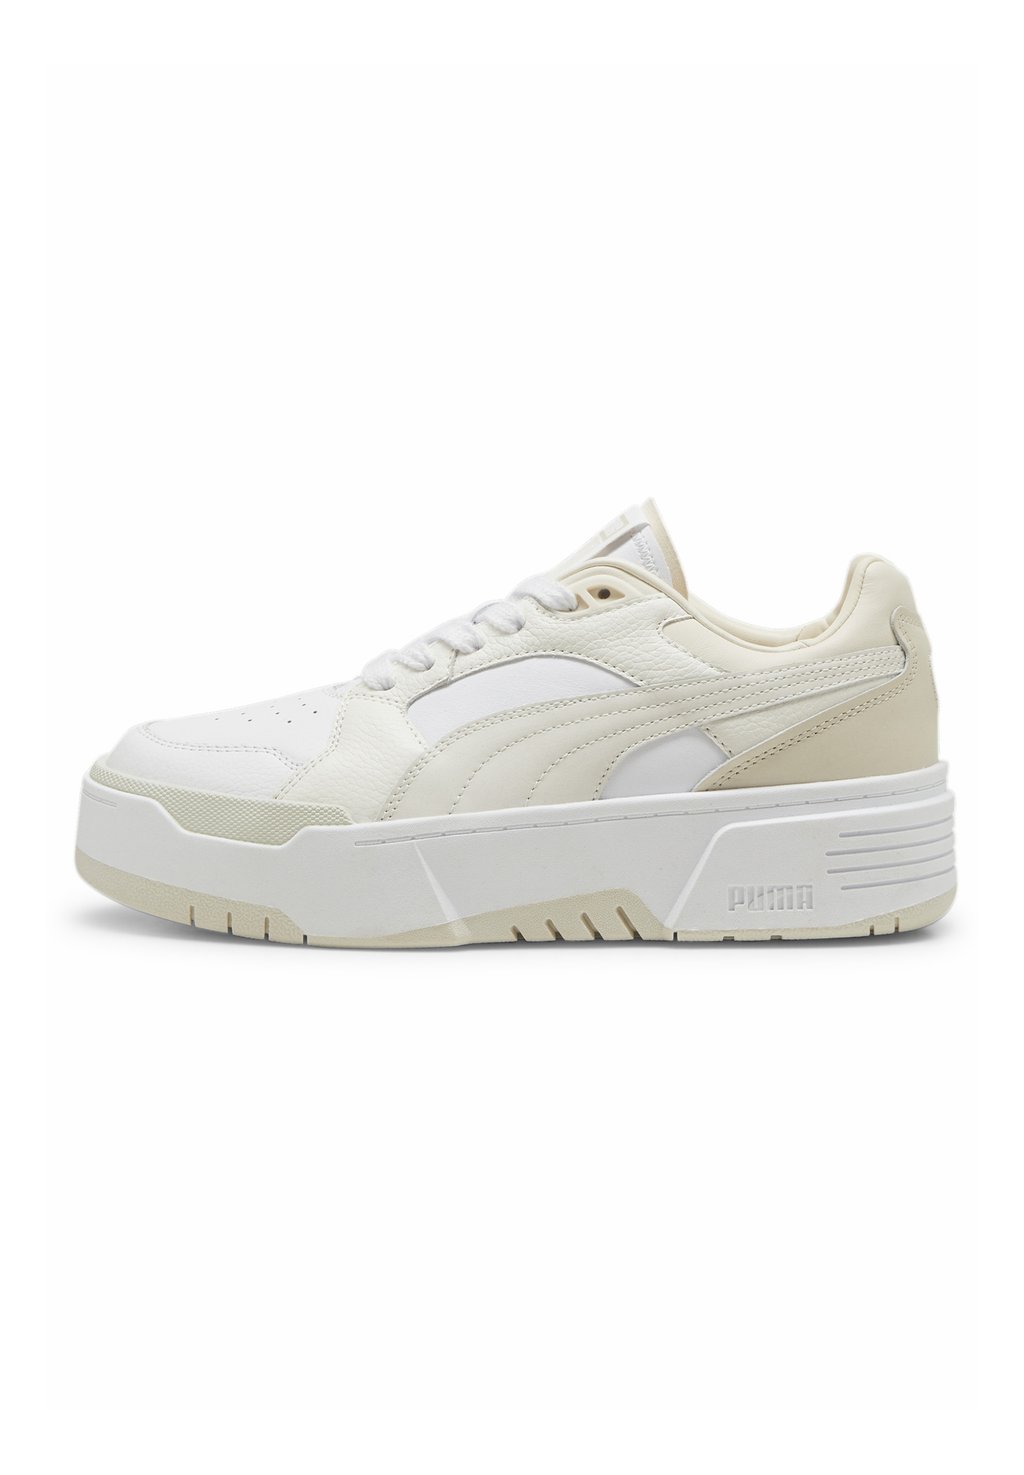 Низкие кроссовки Ca Flyz Prm Sneakers Puma, цвет white warm white цена и фото